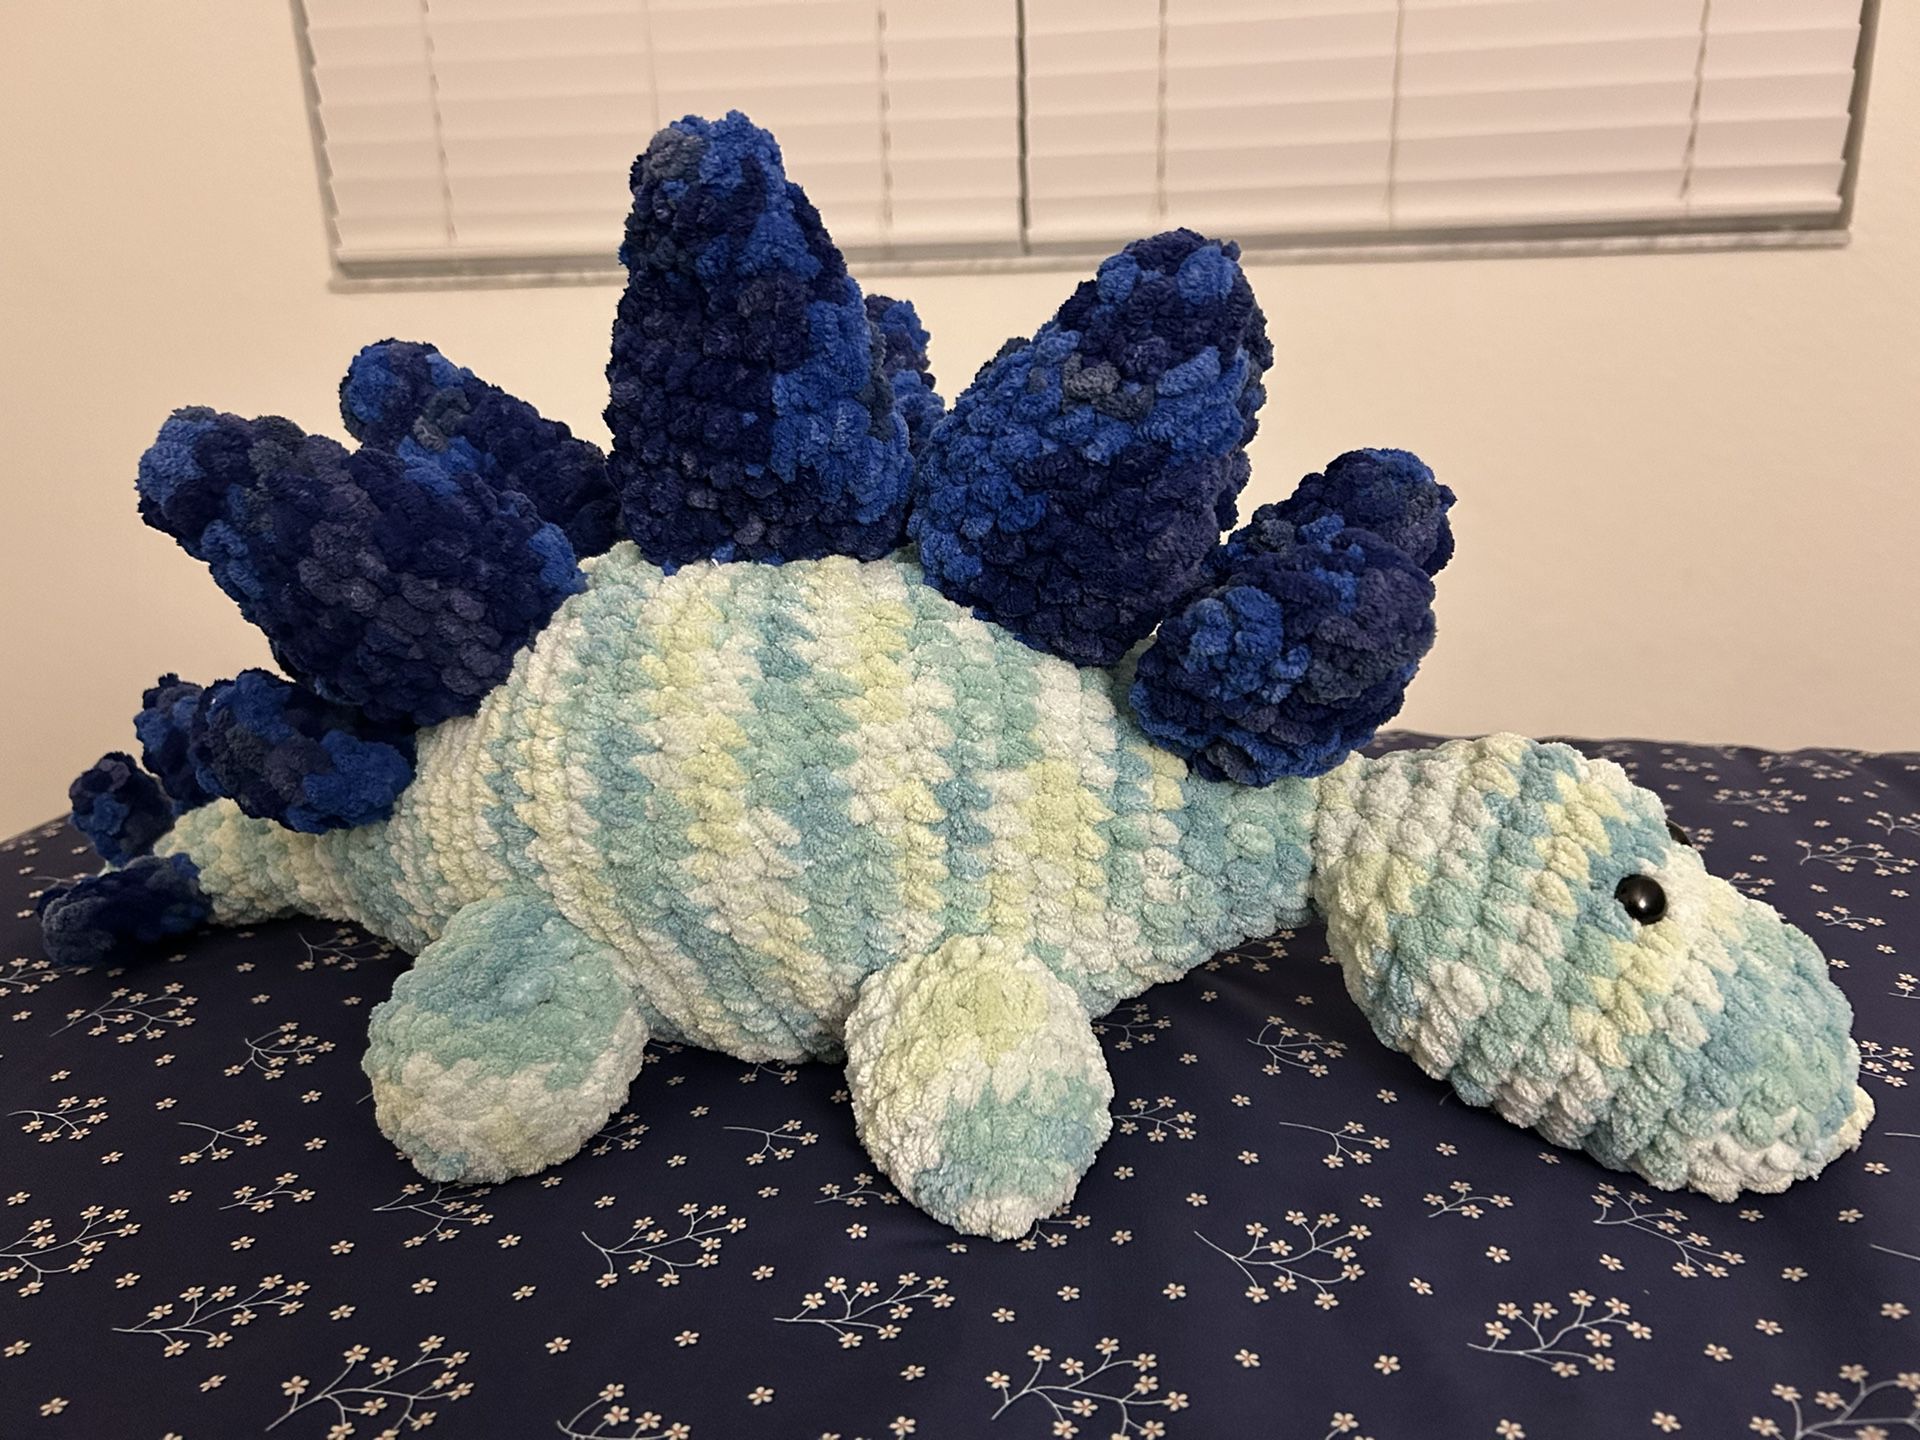 Handmade Stegosaurus Plush Toy